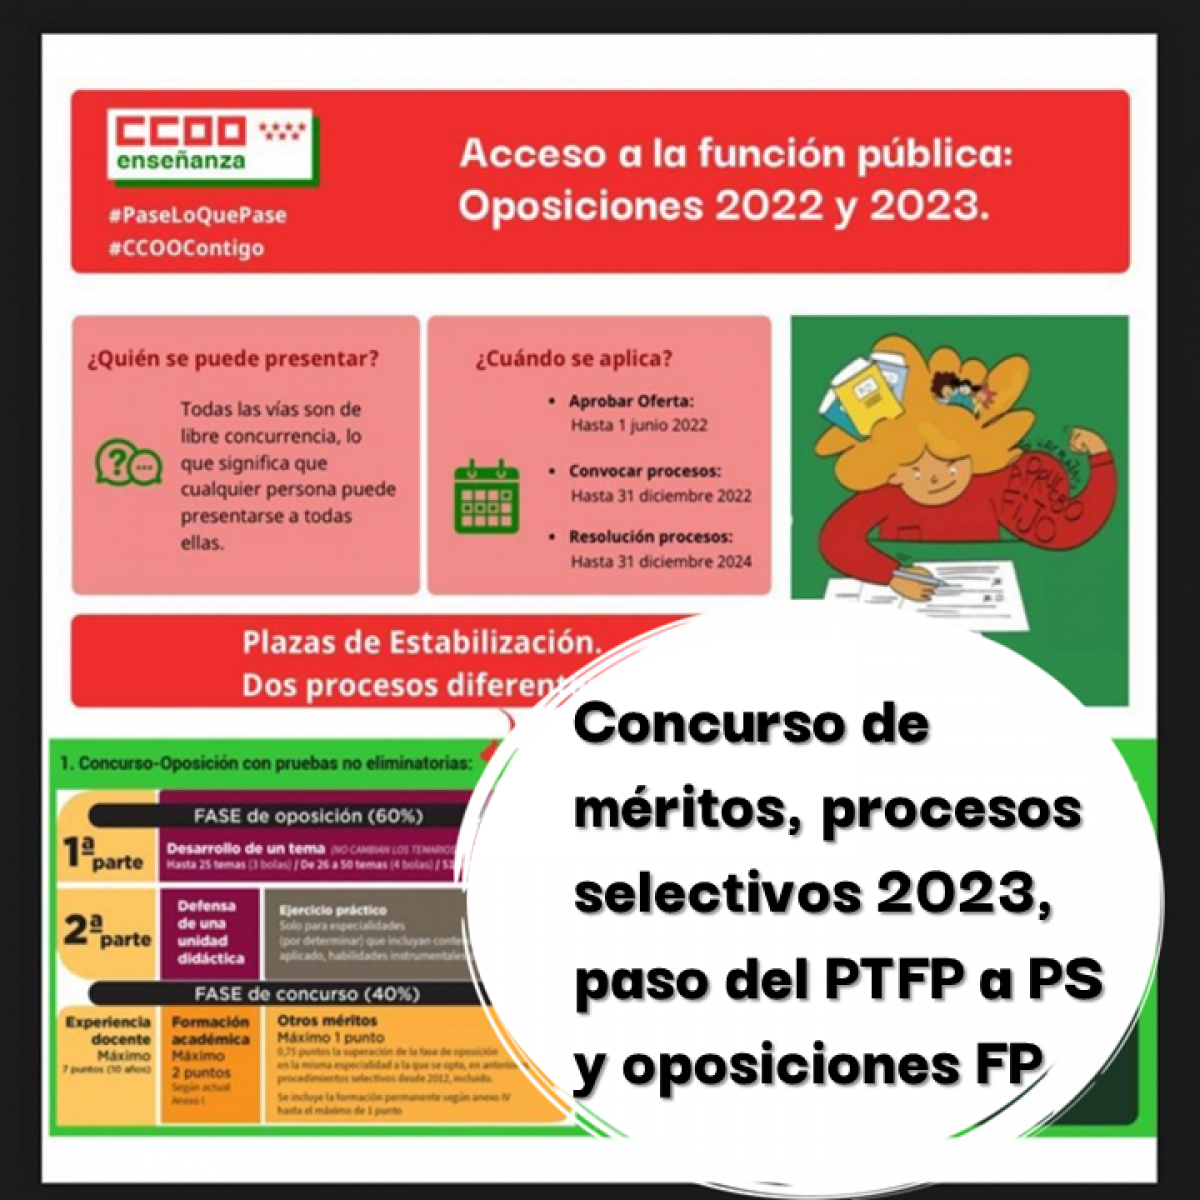 Concurso de méritos, procesos selectivos 2023, paso del PTFP a PS y oposiciones FP